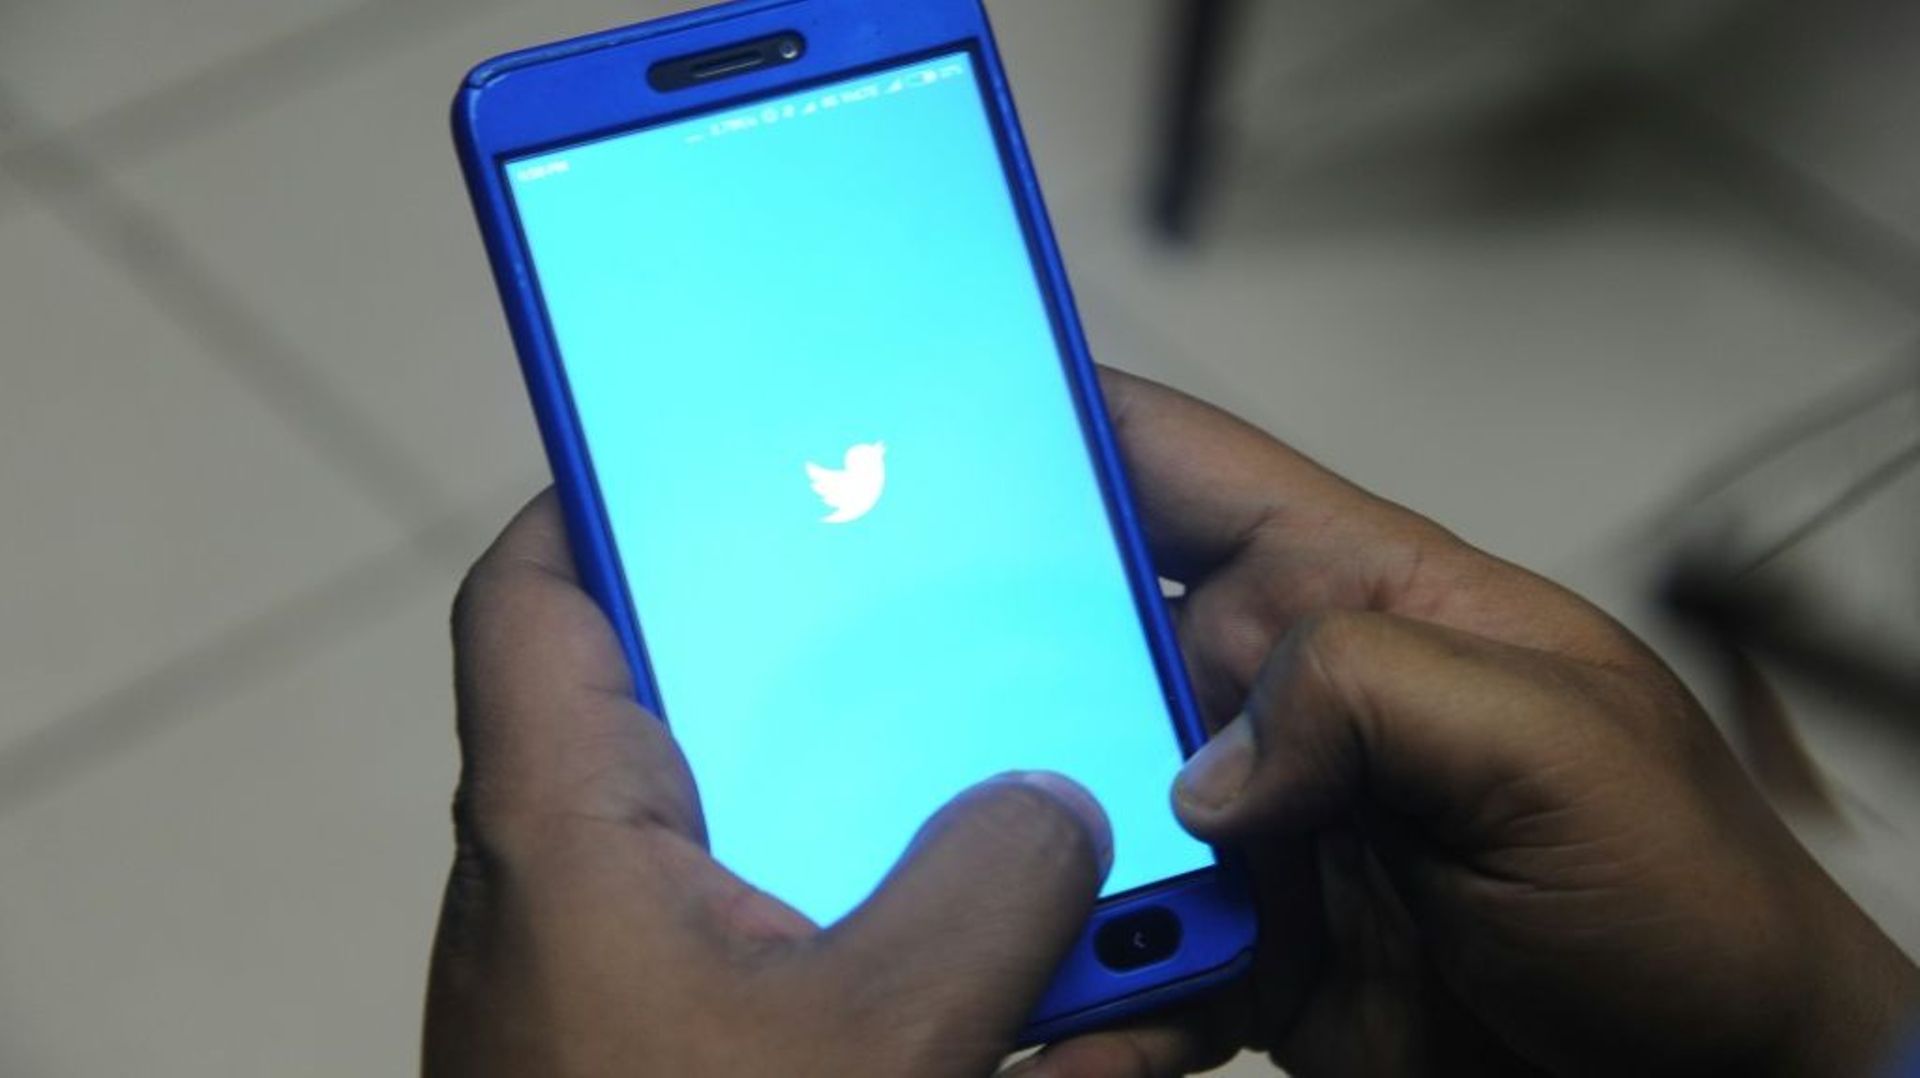 Le réseau social Twitter a demandé à ses utilisateurs de changer leur mot de passe par précaution après avoir découvert une faille dans son propre service